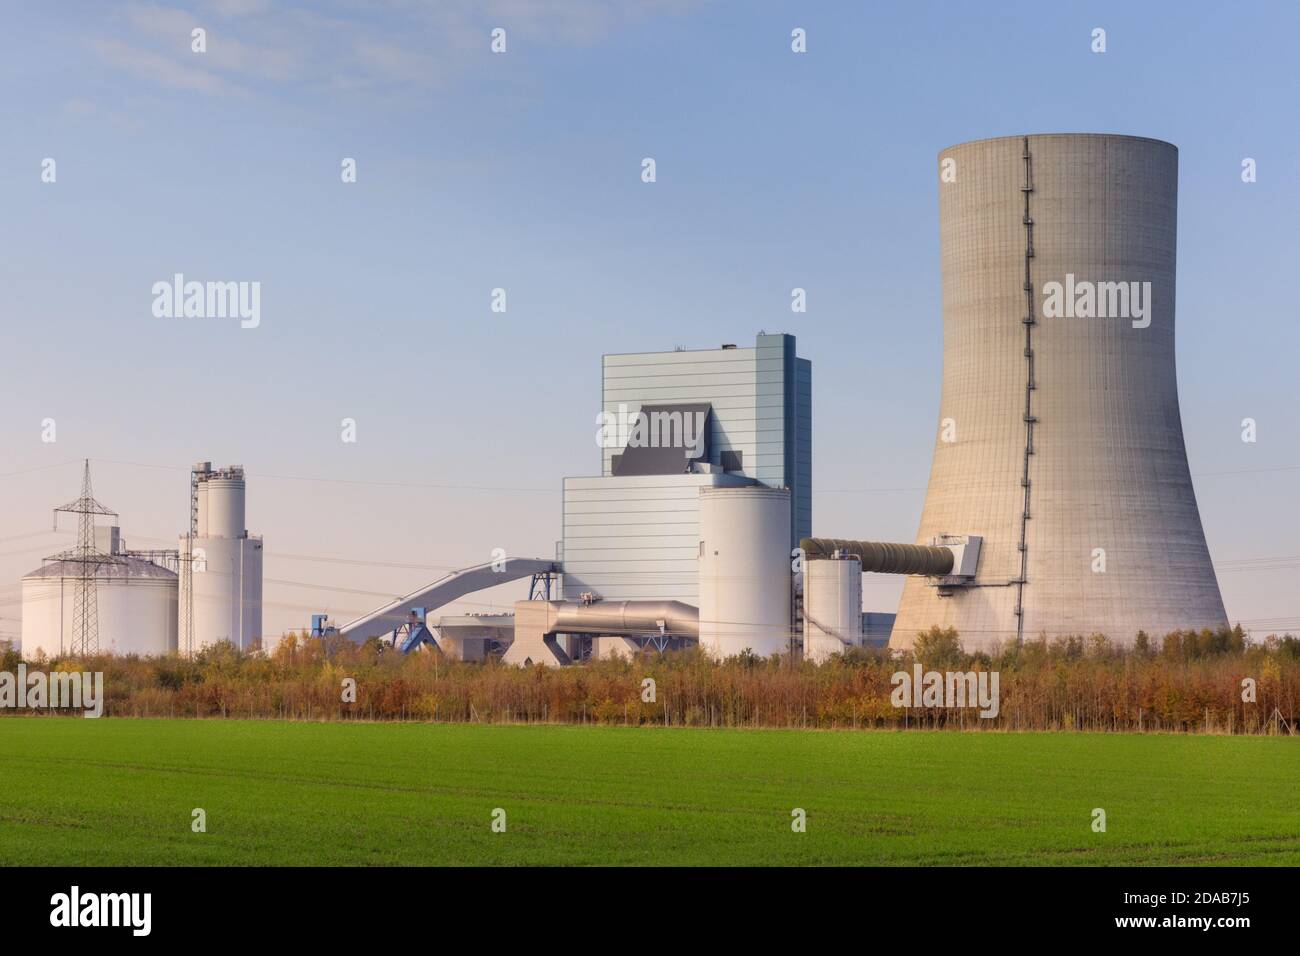 La central eléctrica de Datteln 4, la última central eléctrica a carbón que se construirá, abrió sus puertas en 2020, Datteln, NRW, Alemania Foto de stock